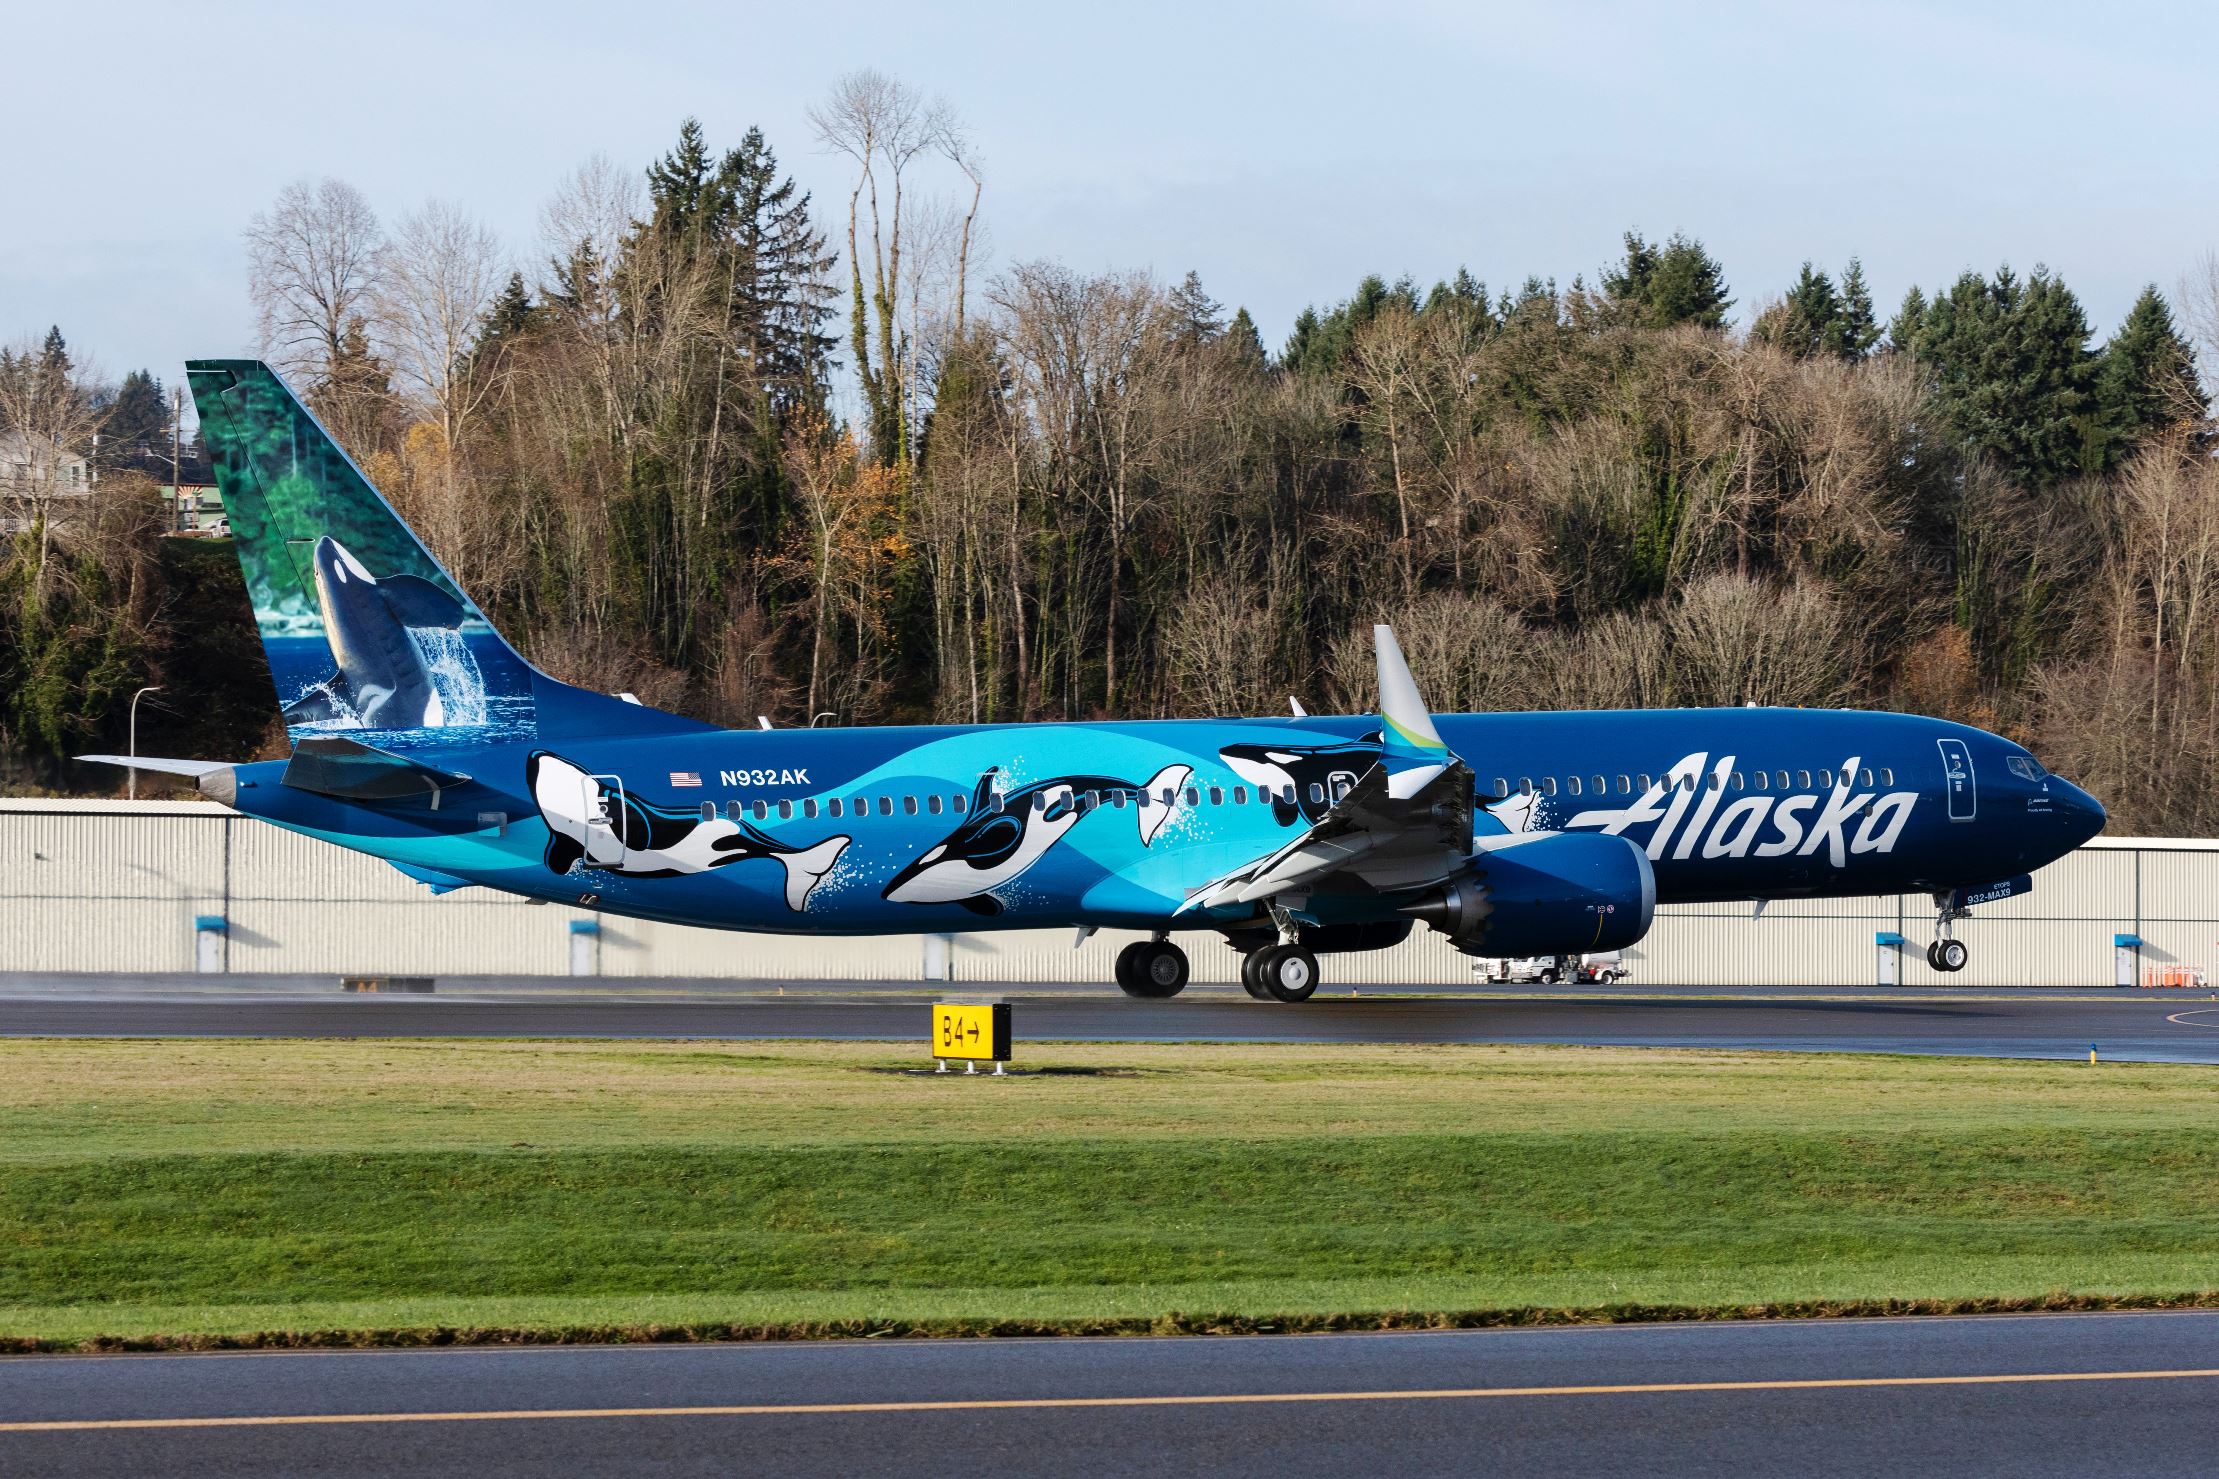 Alaska Airlines’ın Uçağı, Özel Bir Teknikle Boyandı